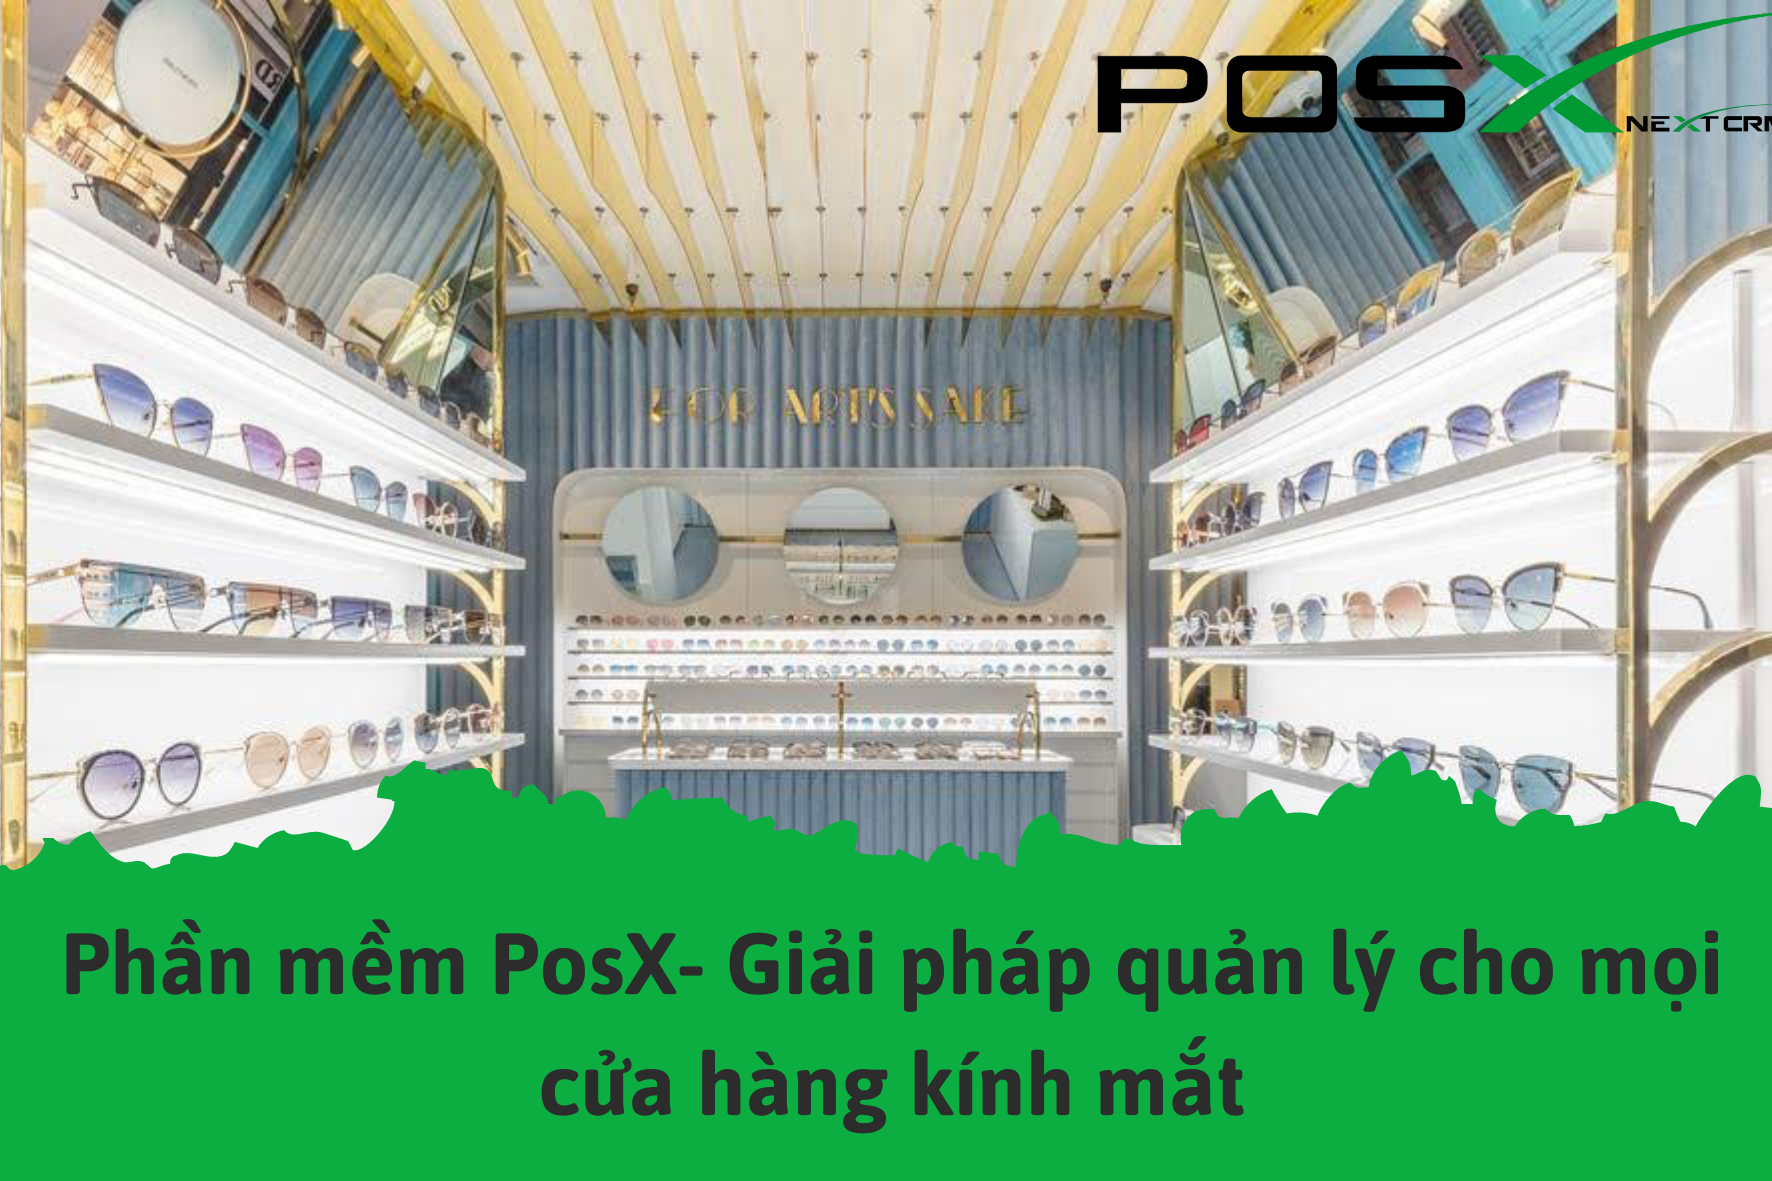 Phần mềm PosX- Giải pháp quản lý cho mọi cửa hàng kính mắt